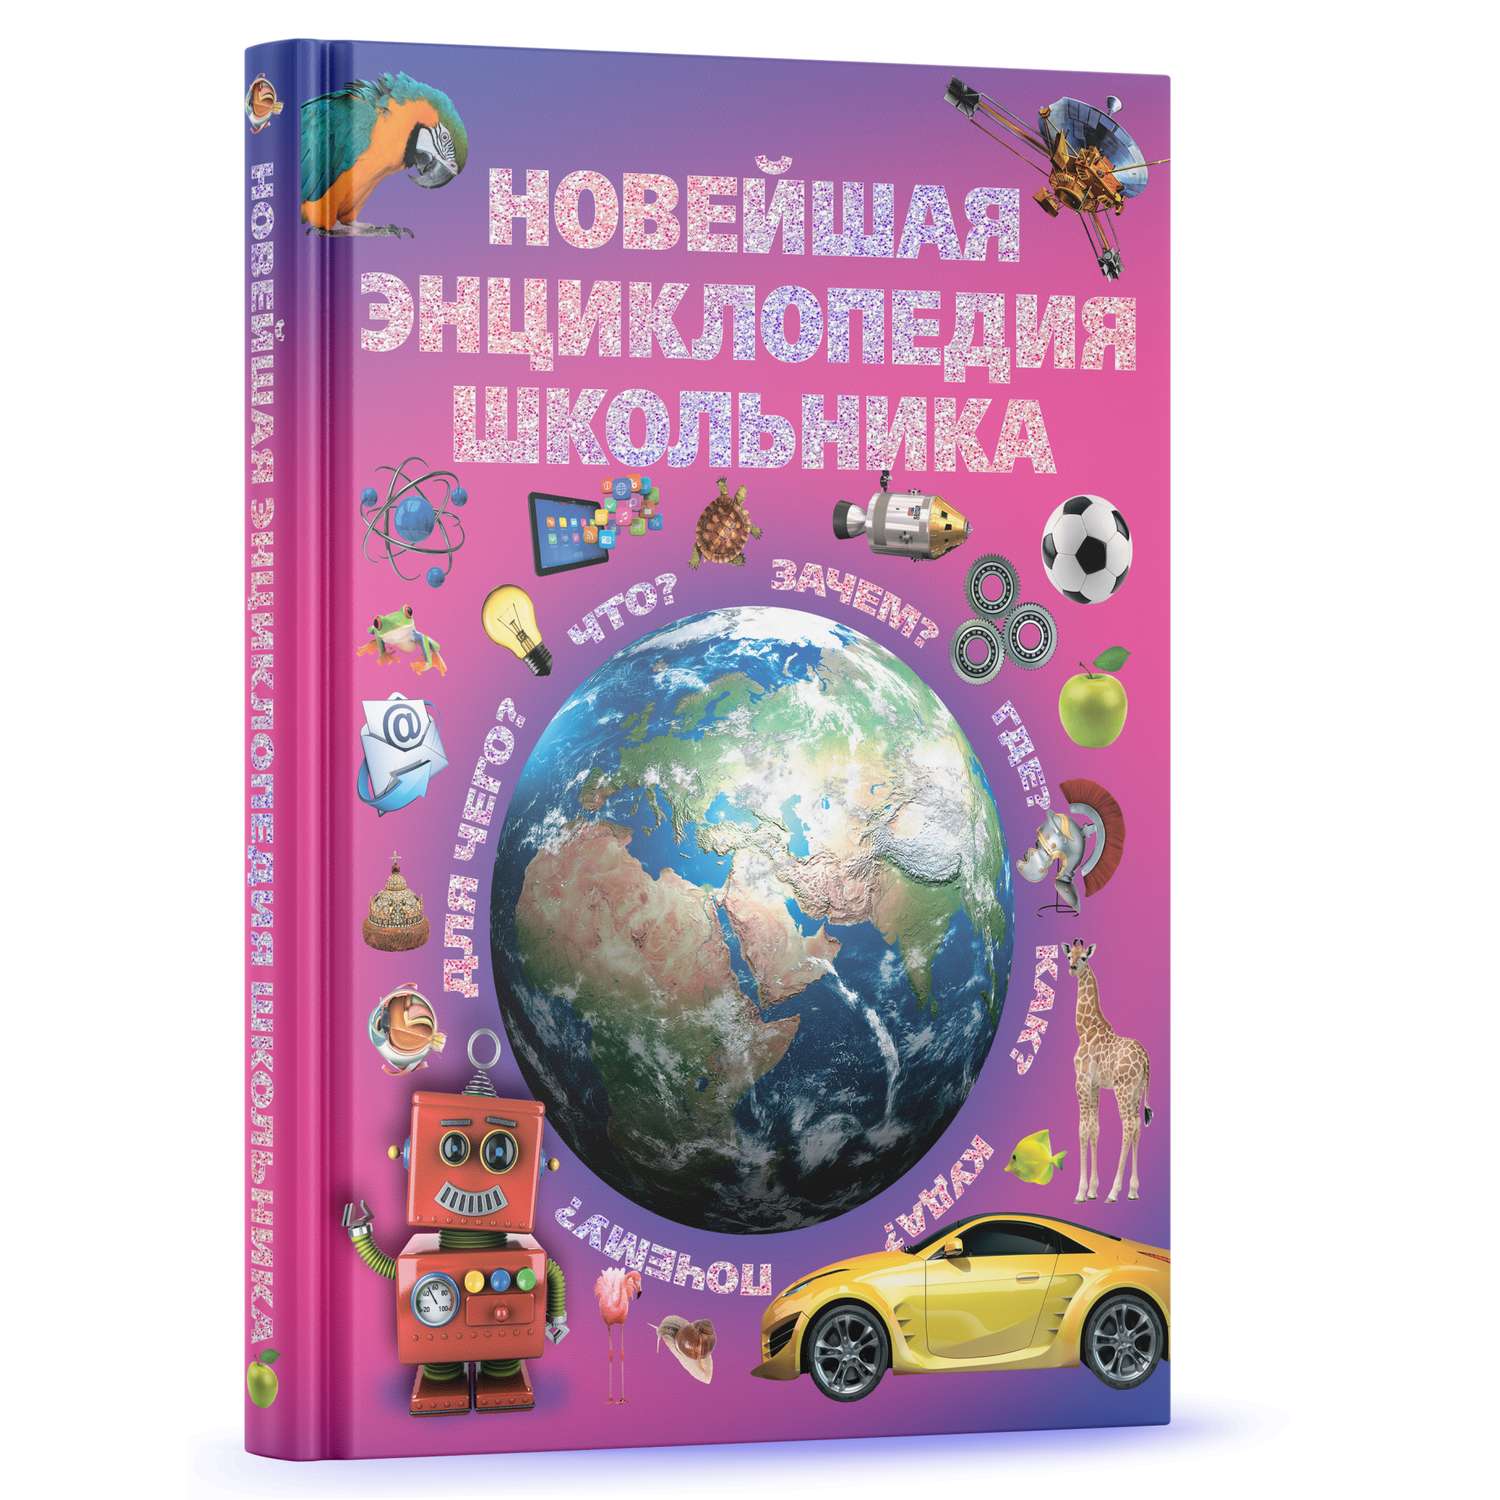 Книга Харвест для детей развивающая Новейшая энциклопедия школьника - фото 1